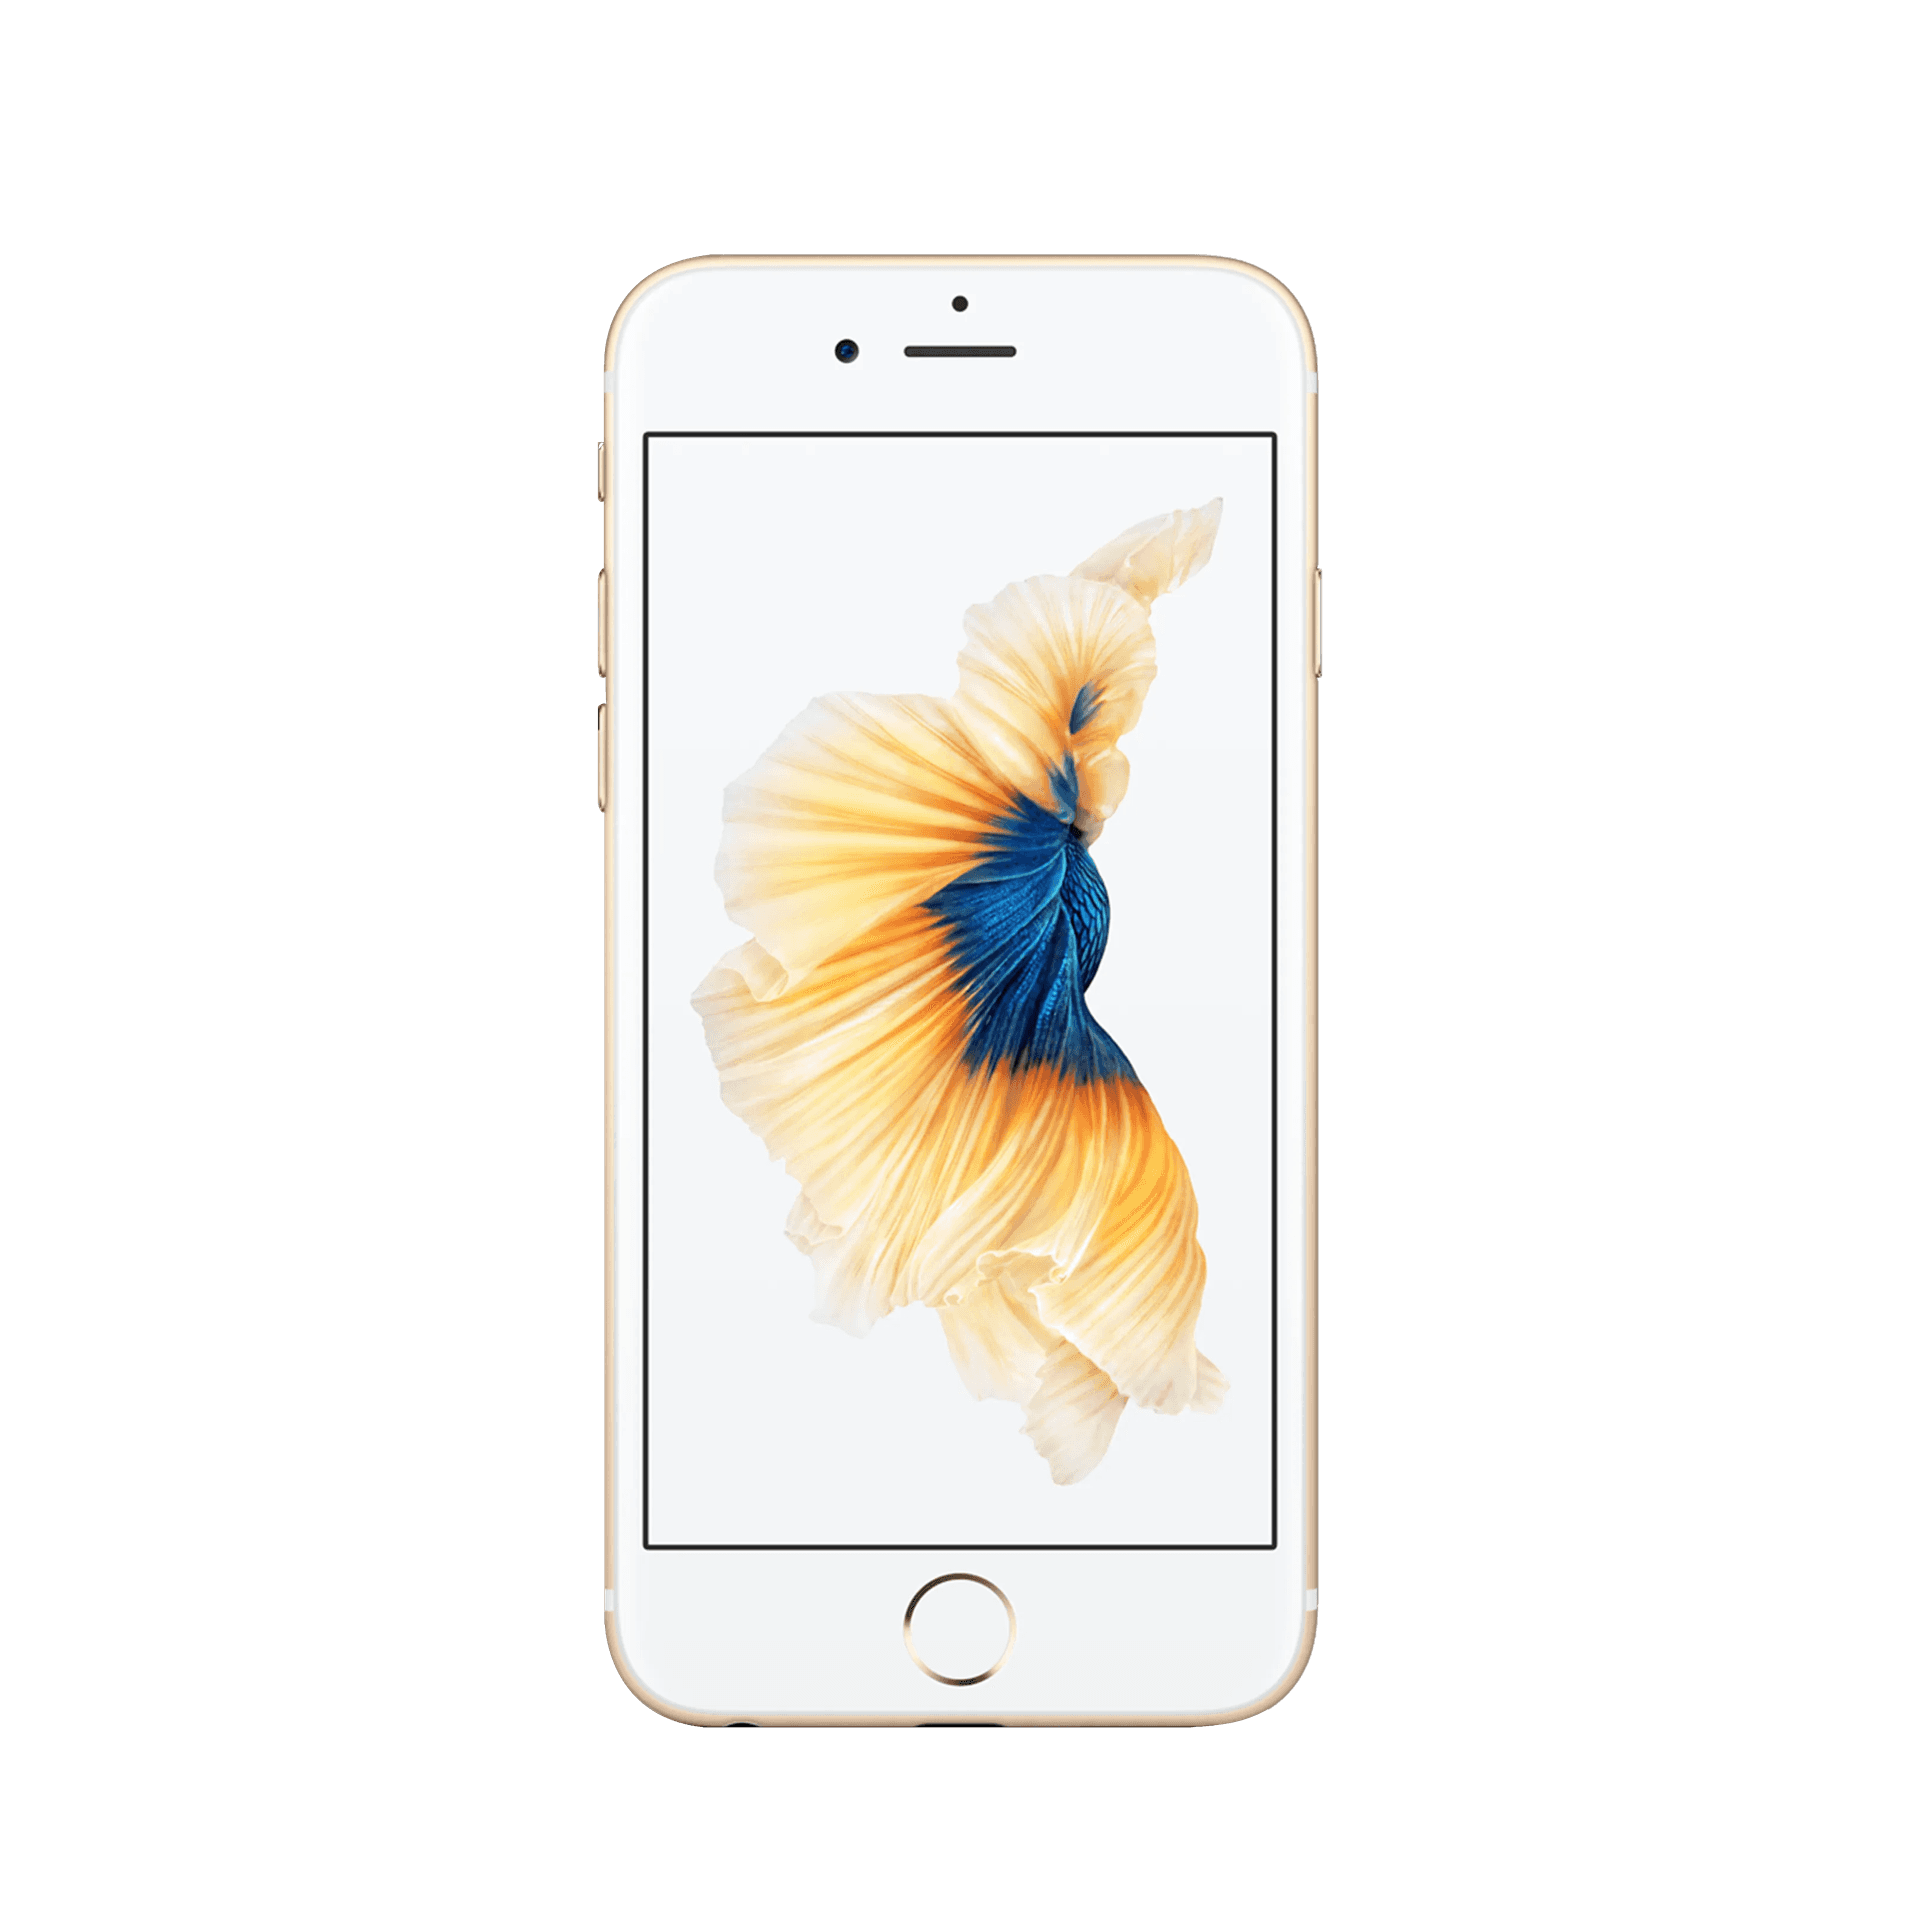 Apple iPhone 6S - 32 GB - Altın